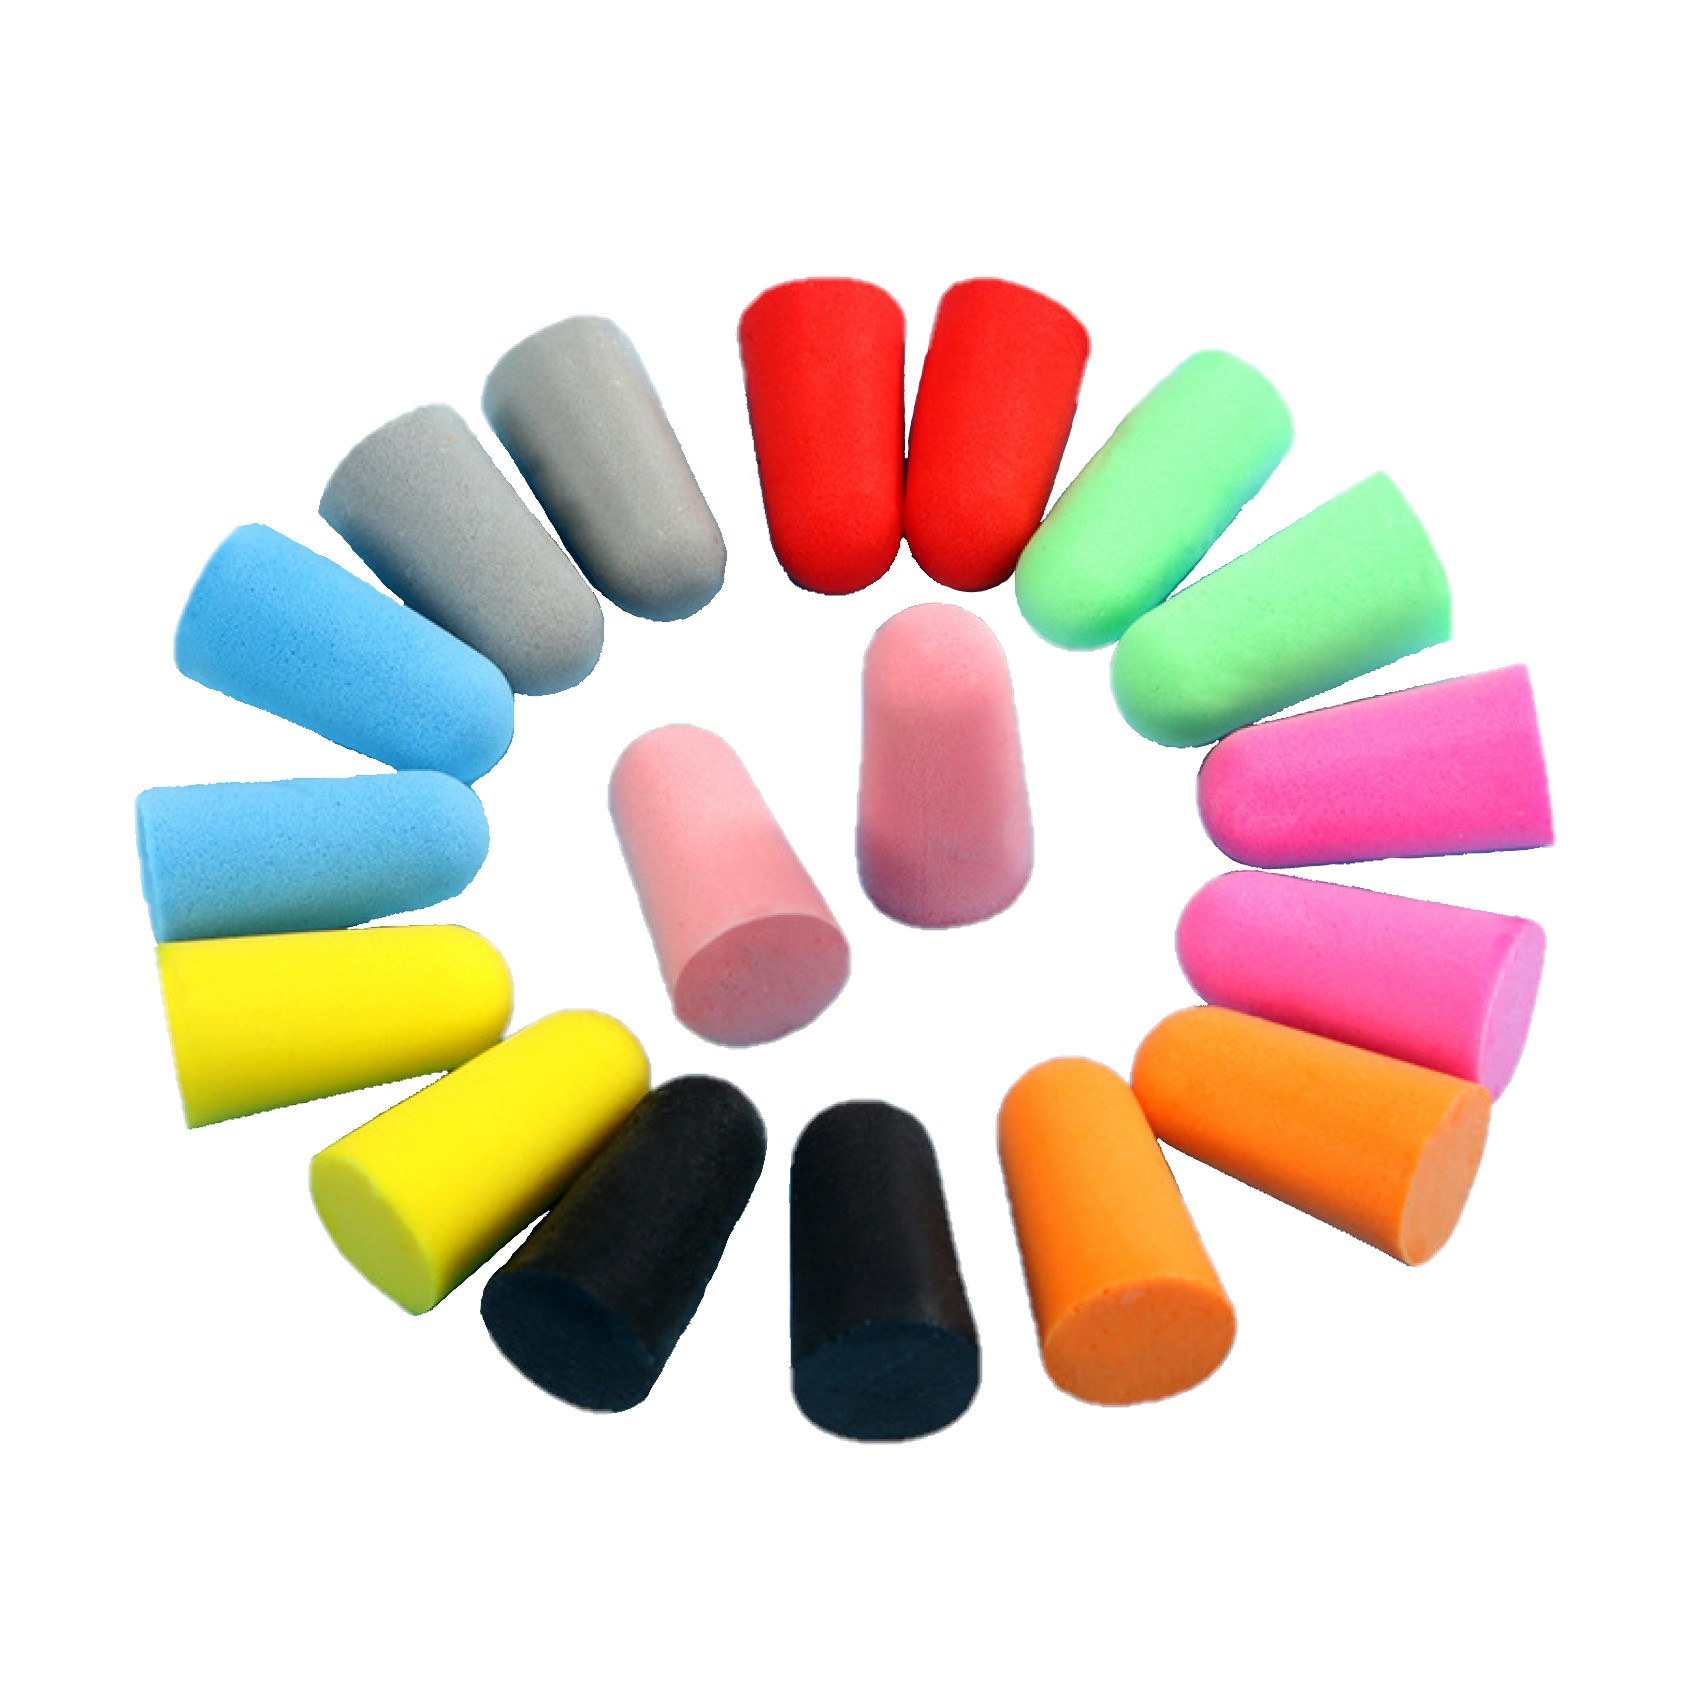 【送料無料】Mies’ 耳栓マルチカラー9個セット（ケース付き） 高級 使い捨て耳栓 コード無し 9個パック 収納付 気持ちいい 清潔 家庭用 収納BOX付 携帯便利 アイディア商品